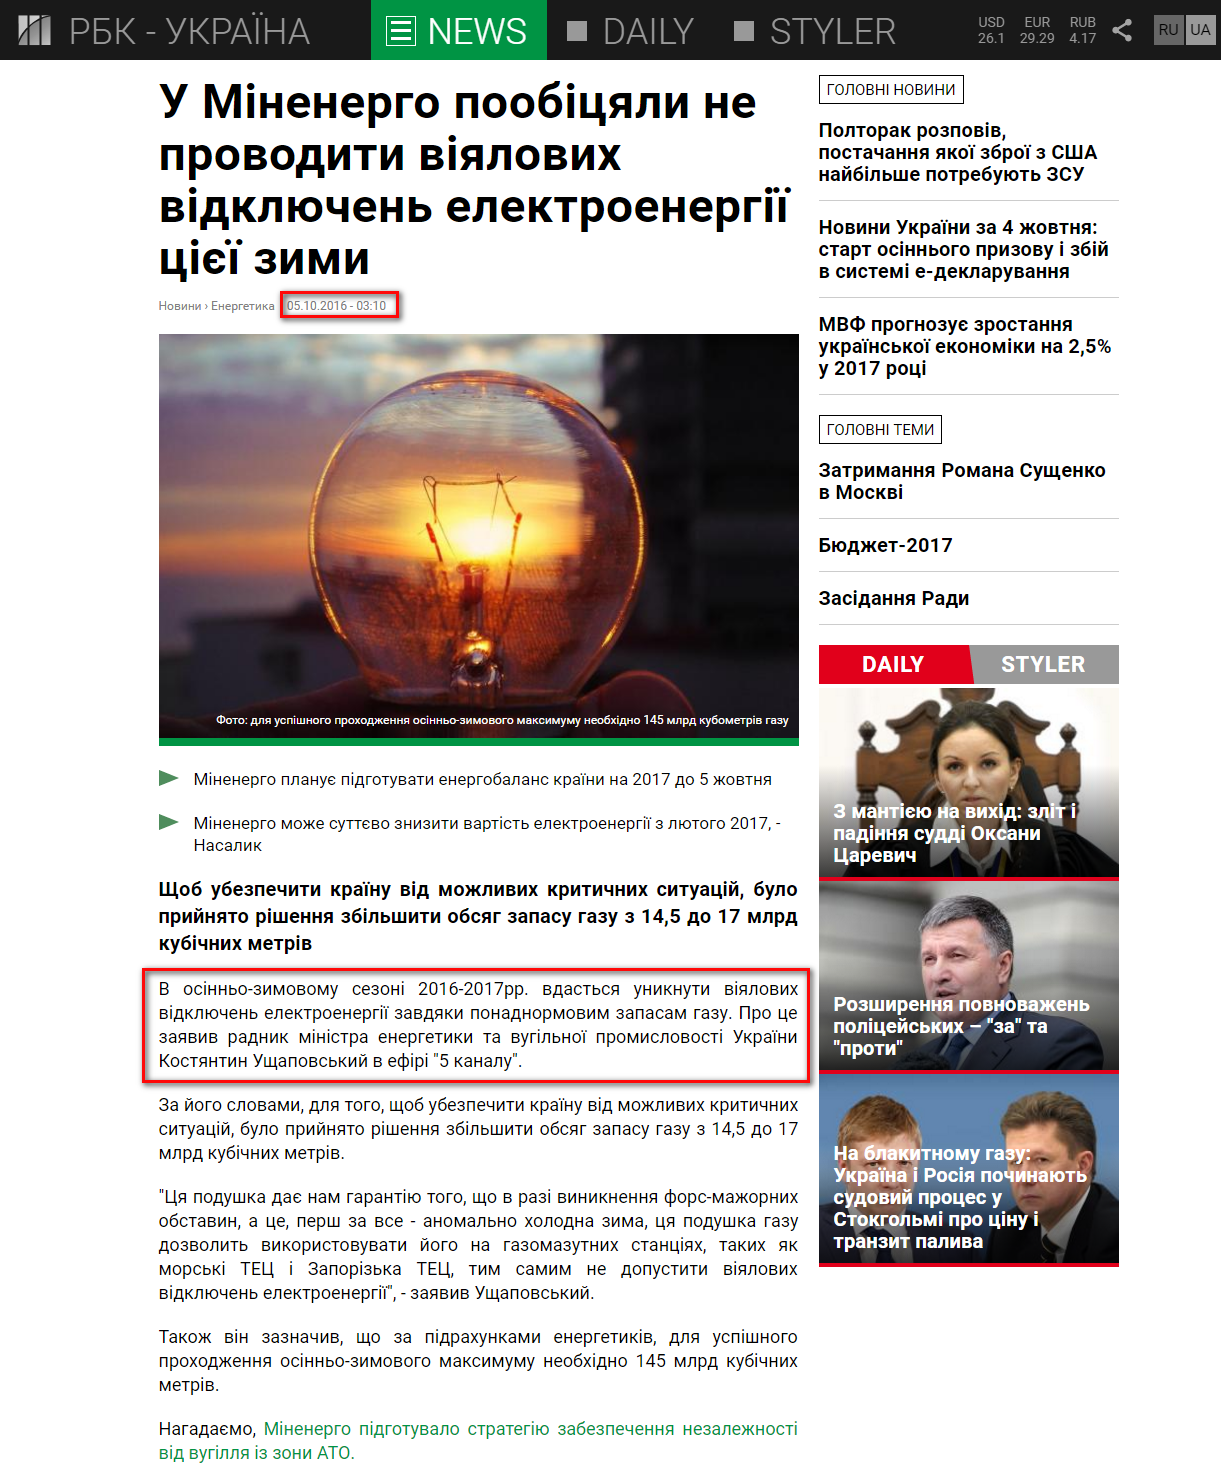 https://www.rbc.ua/ukr/news/minenergo-poobeshchali-provodit-veernyh-otklyucheniy-1475622381.html